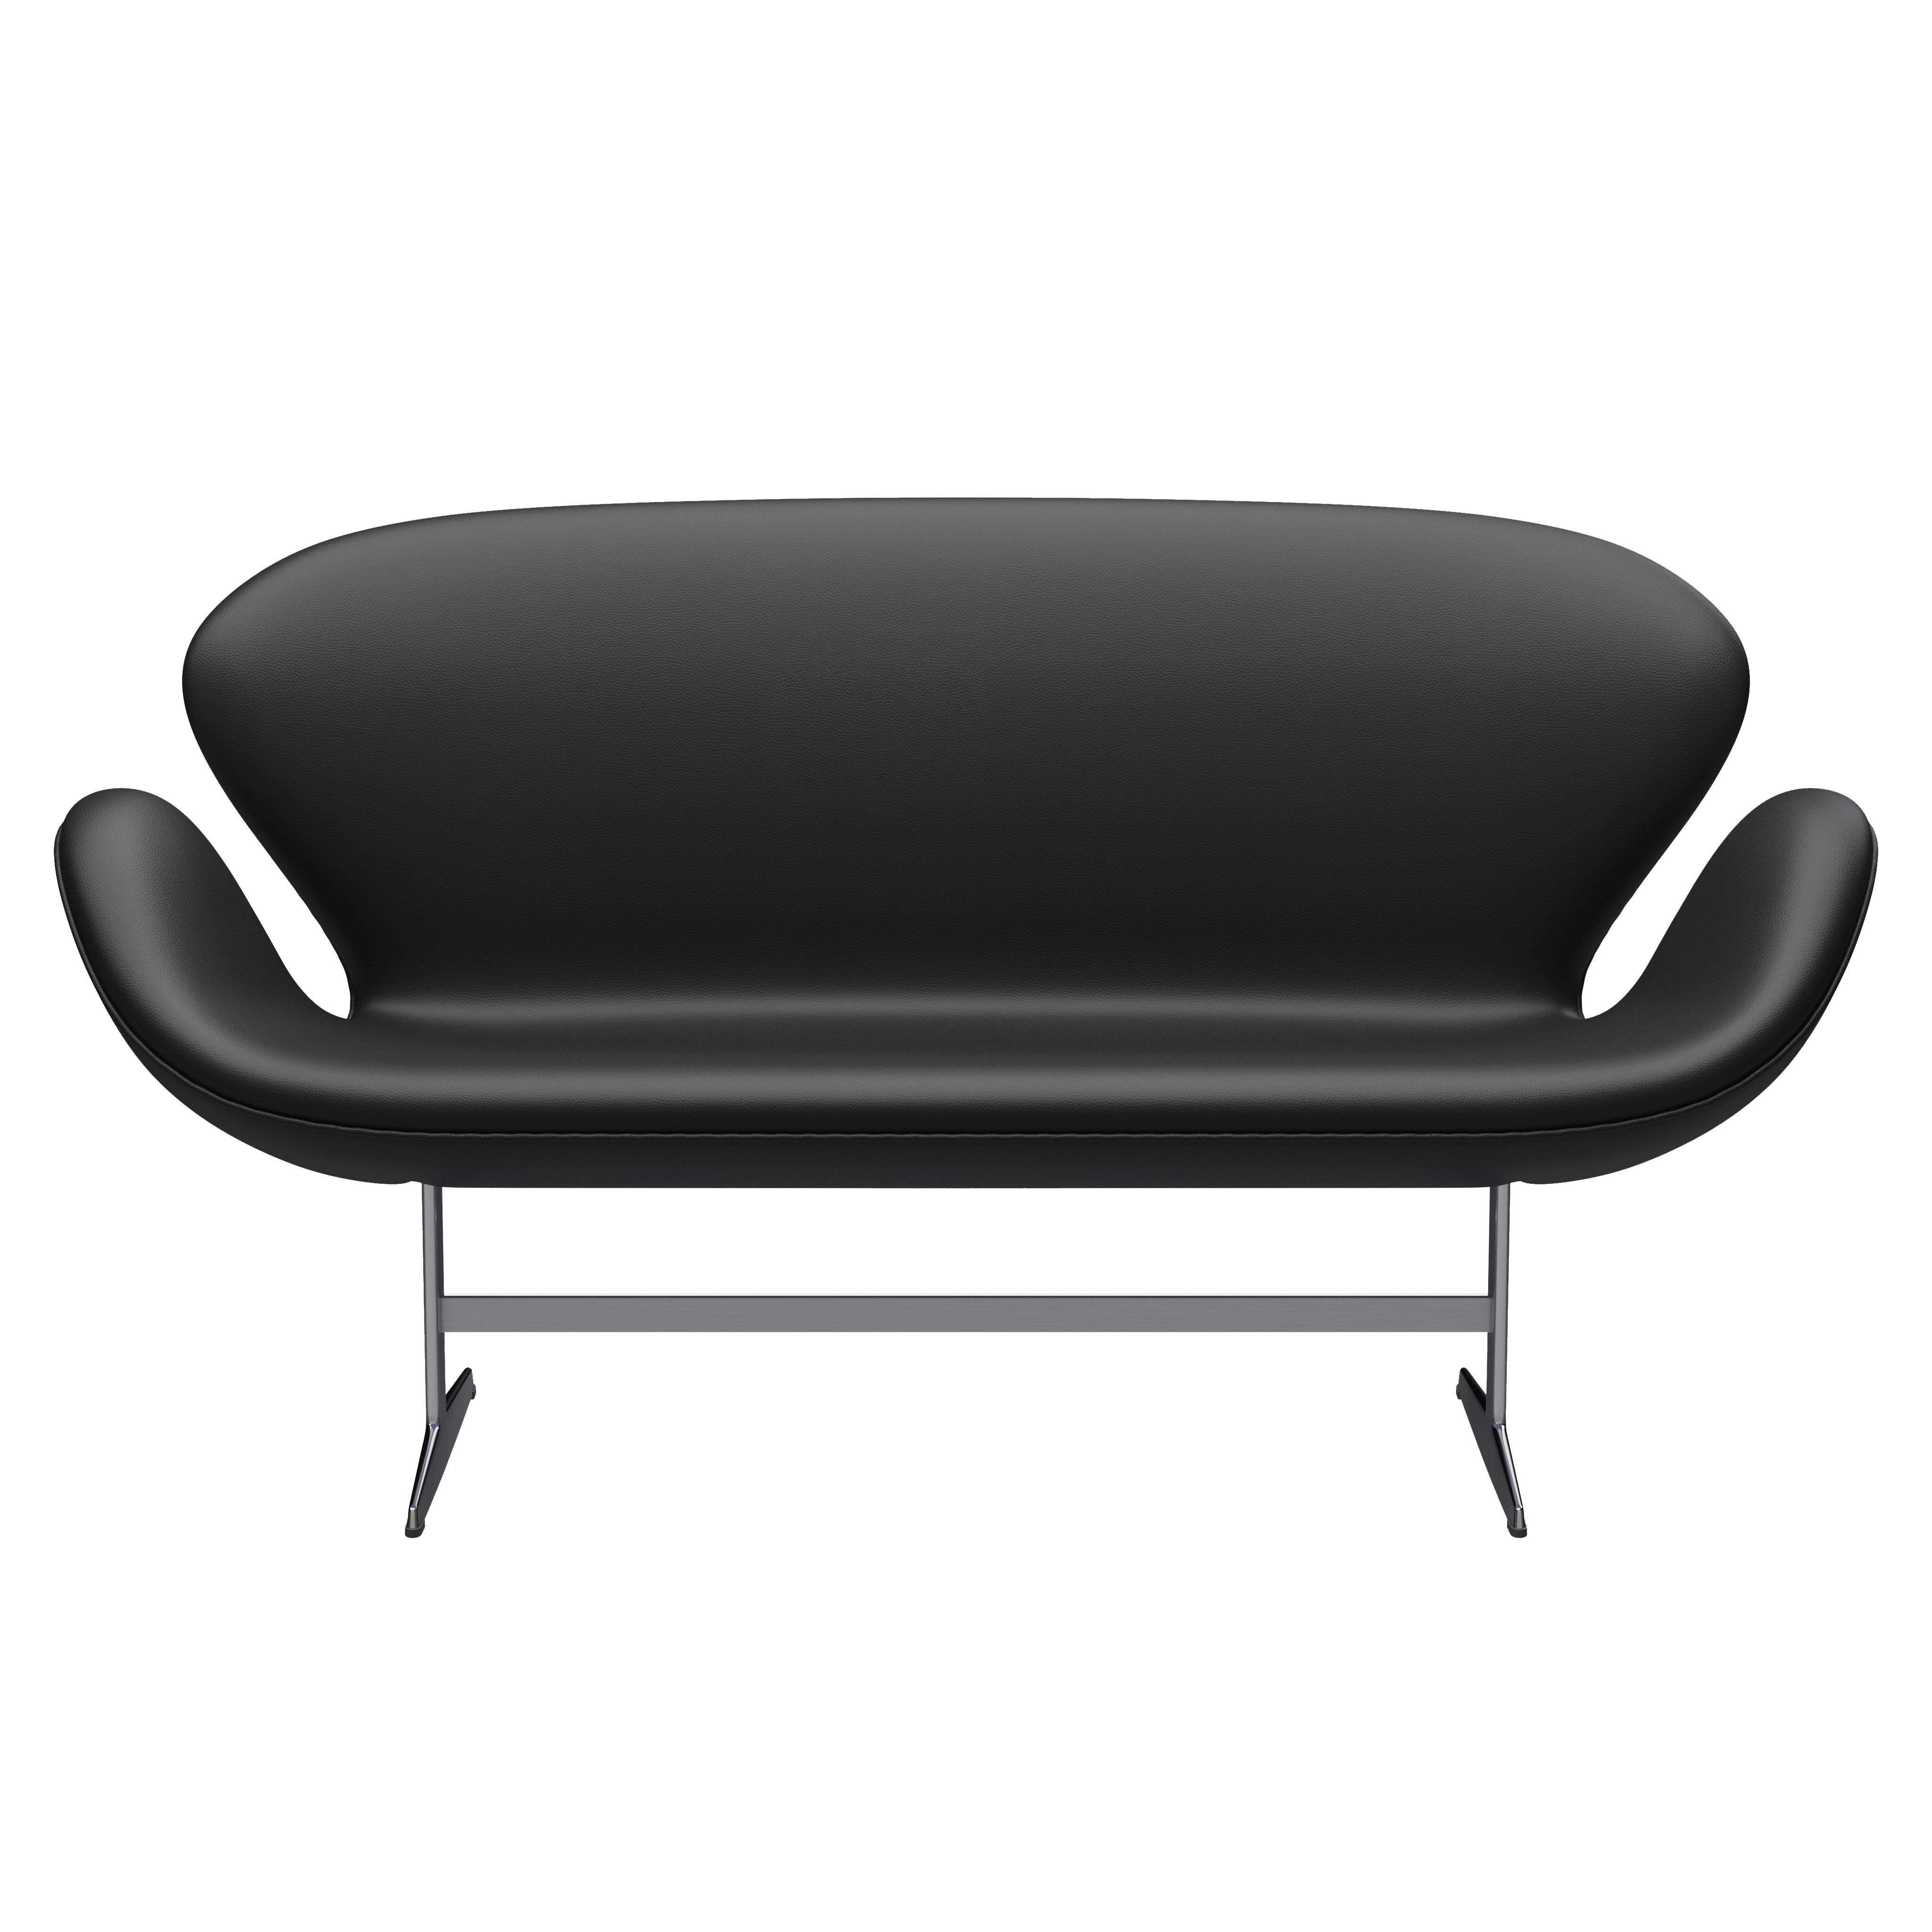 Arne Jacobsen 'Swan' Sofa for Fritz Hansen in Leather Upholstery (Cat. 4) For Sale 4